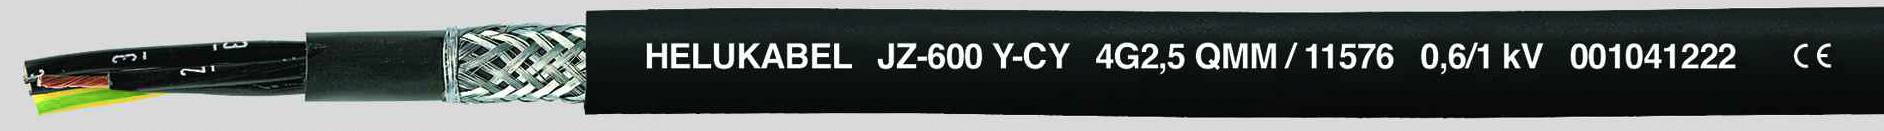 HELUKABEL JZ-600-Y-CY Steuerleitung 5 G 0.75 mm² Schwarz 11492-500 500 m